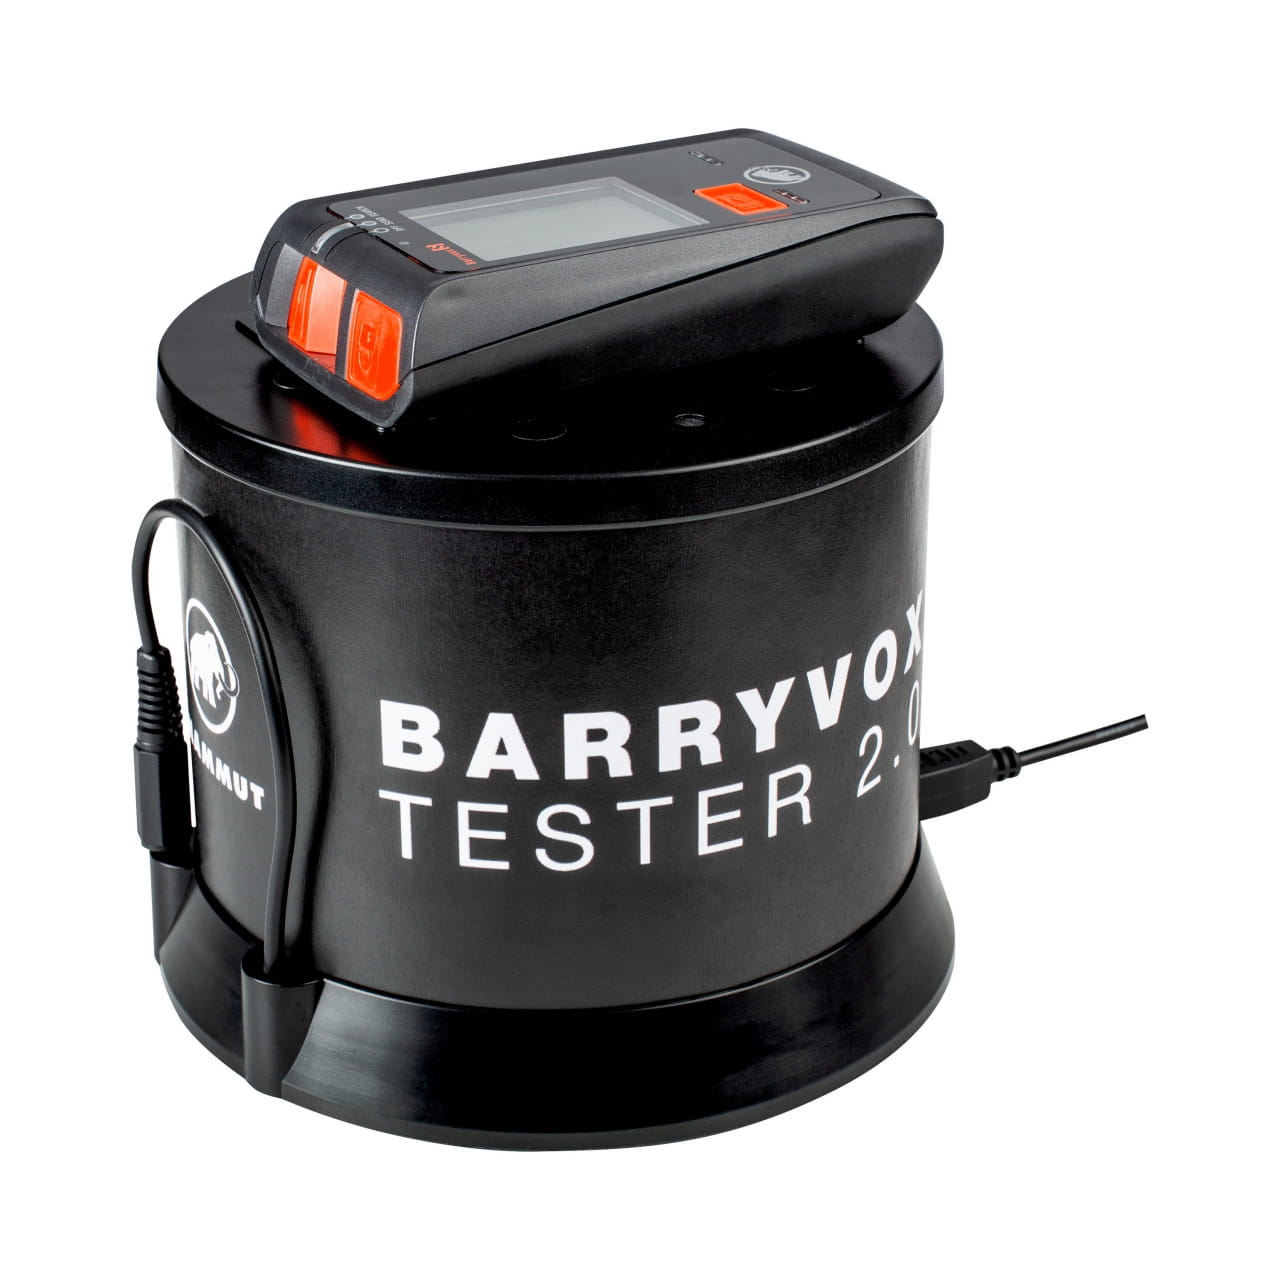 Testovací zařízení pro lavinový pípák Mammut Barryvox Tester 2.0